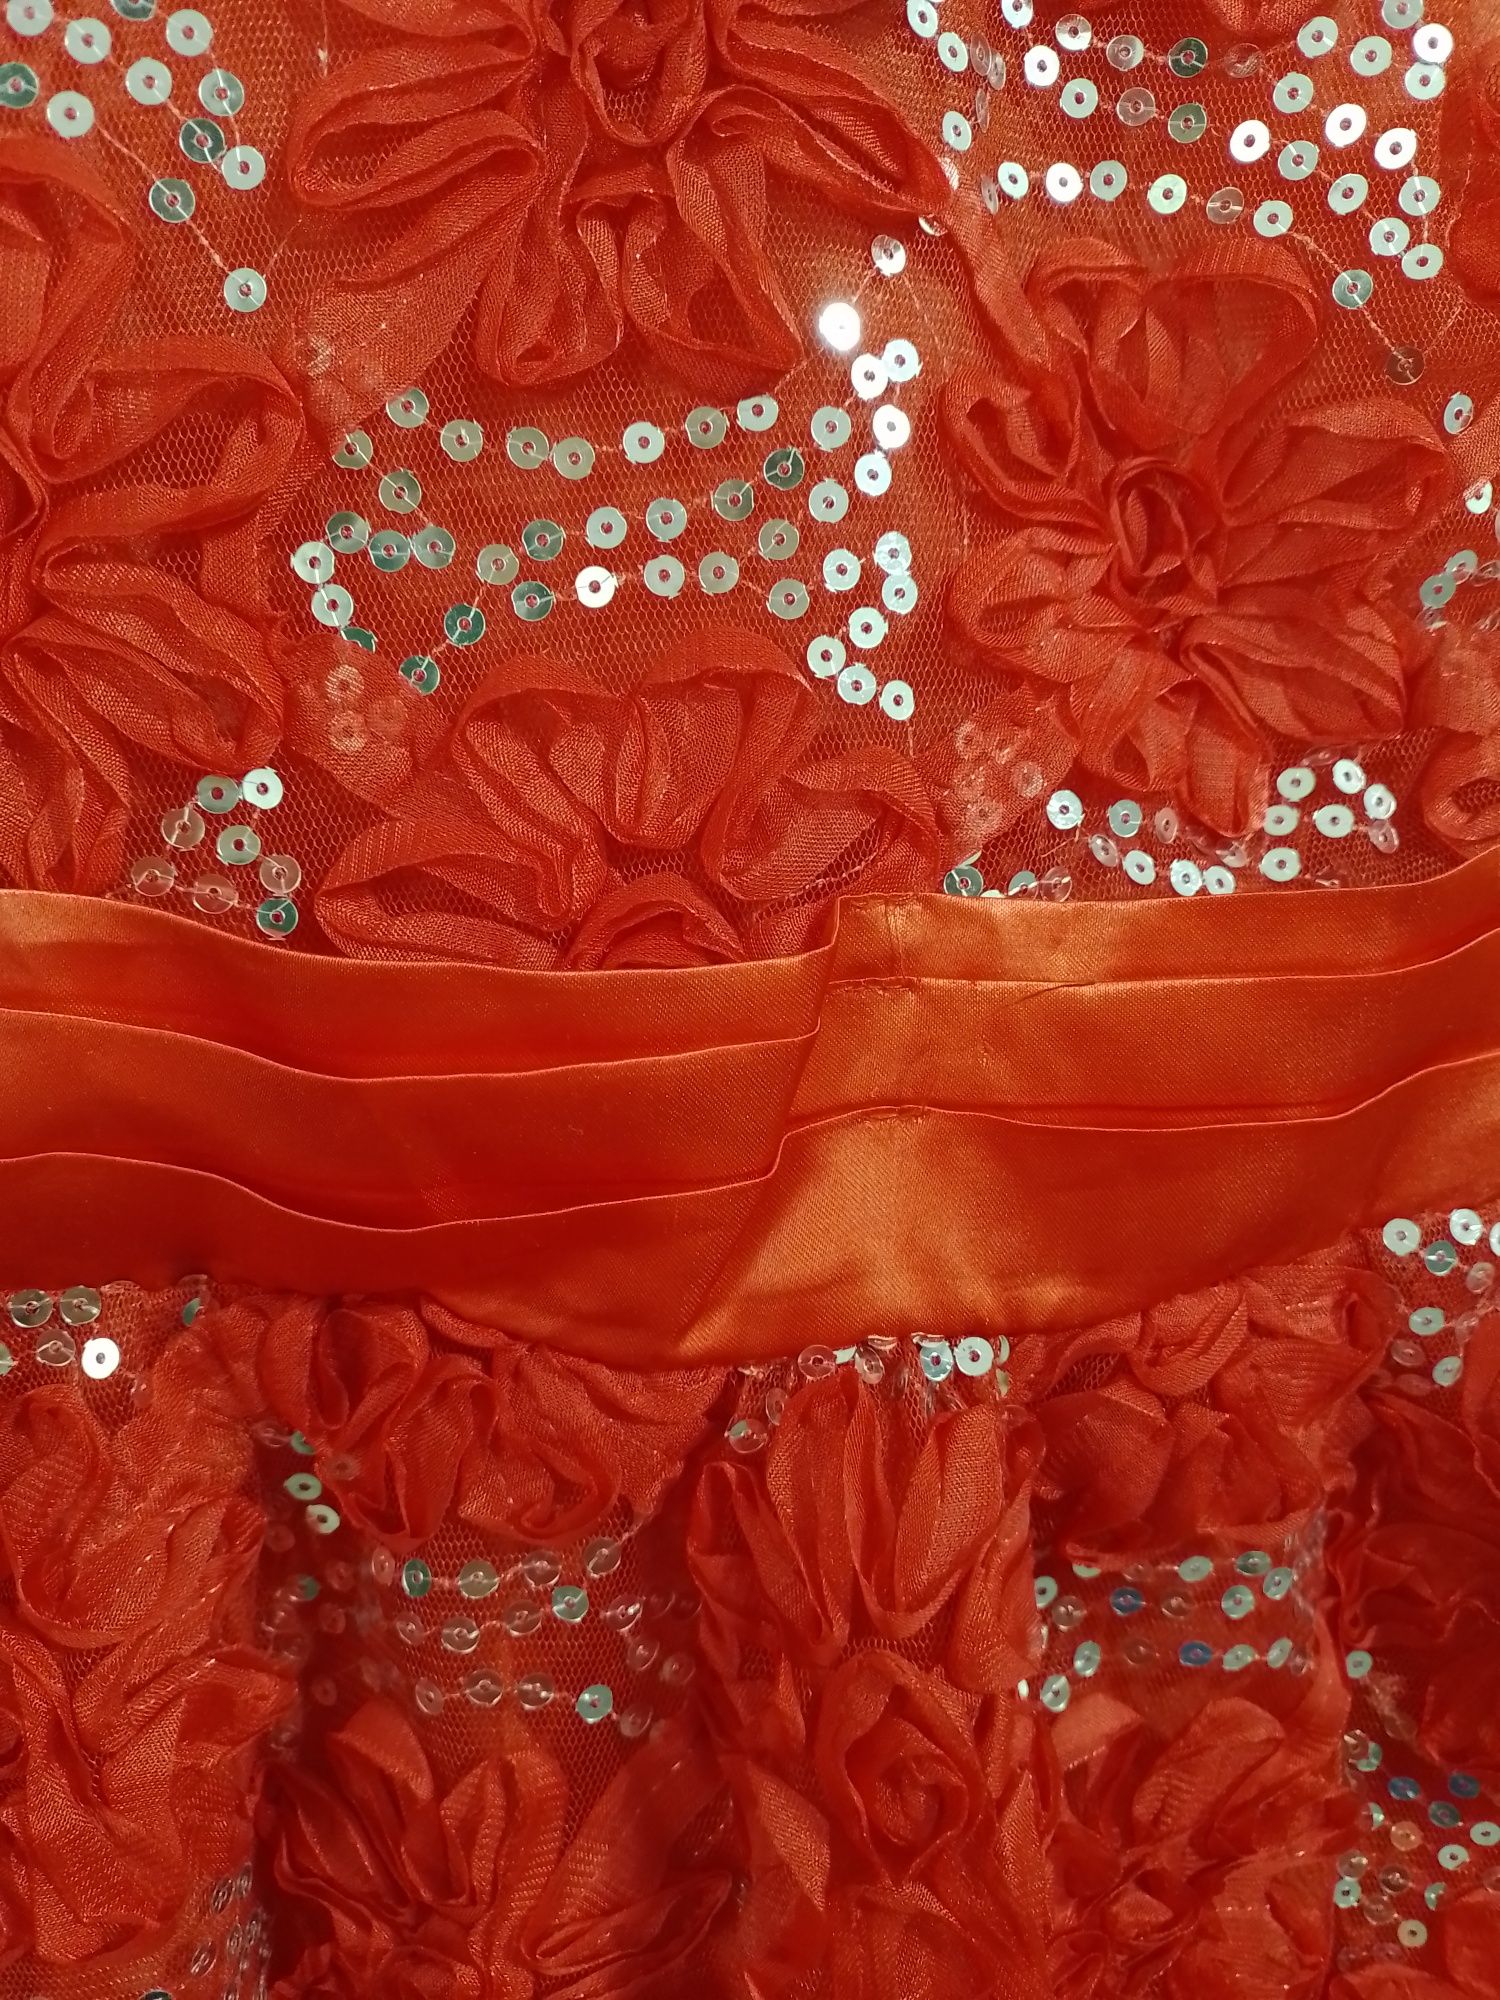 Rochiță roșie nouă, cu etichetă, mar 130